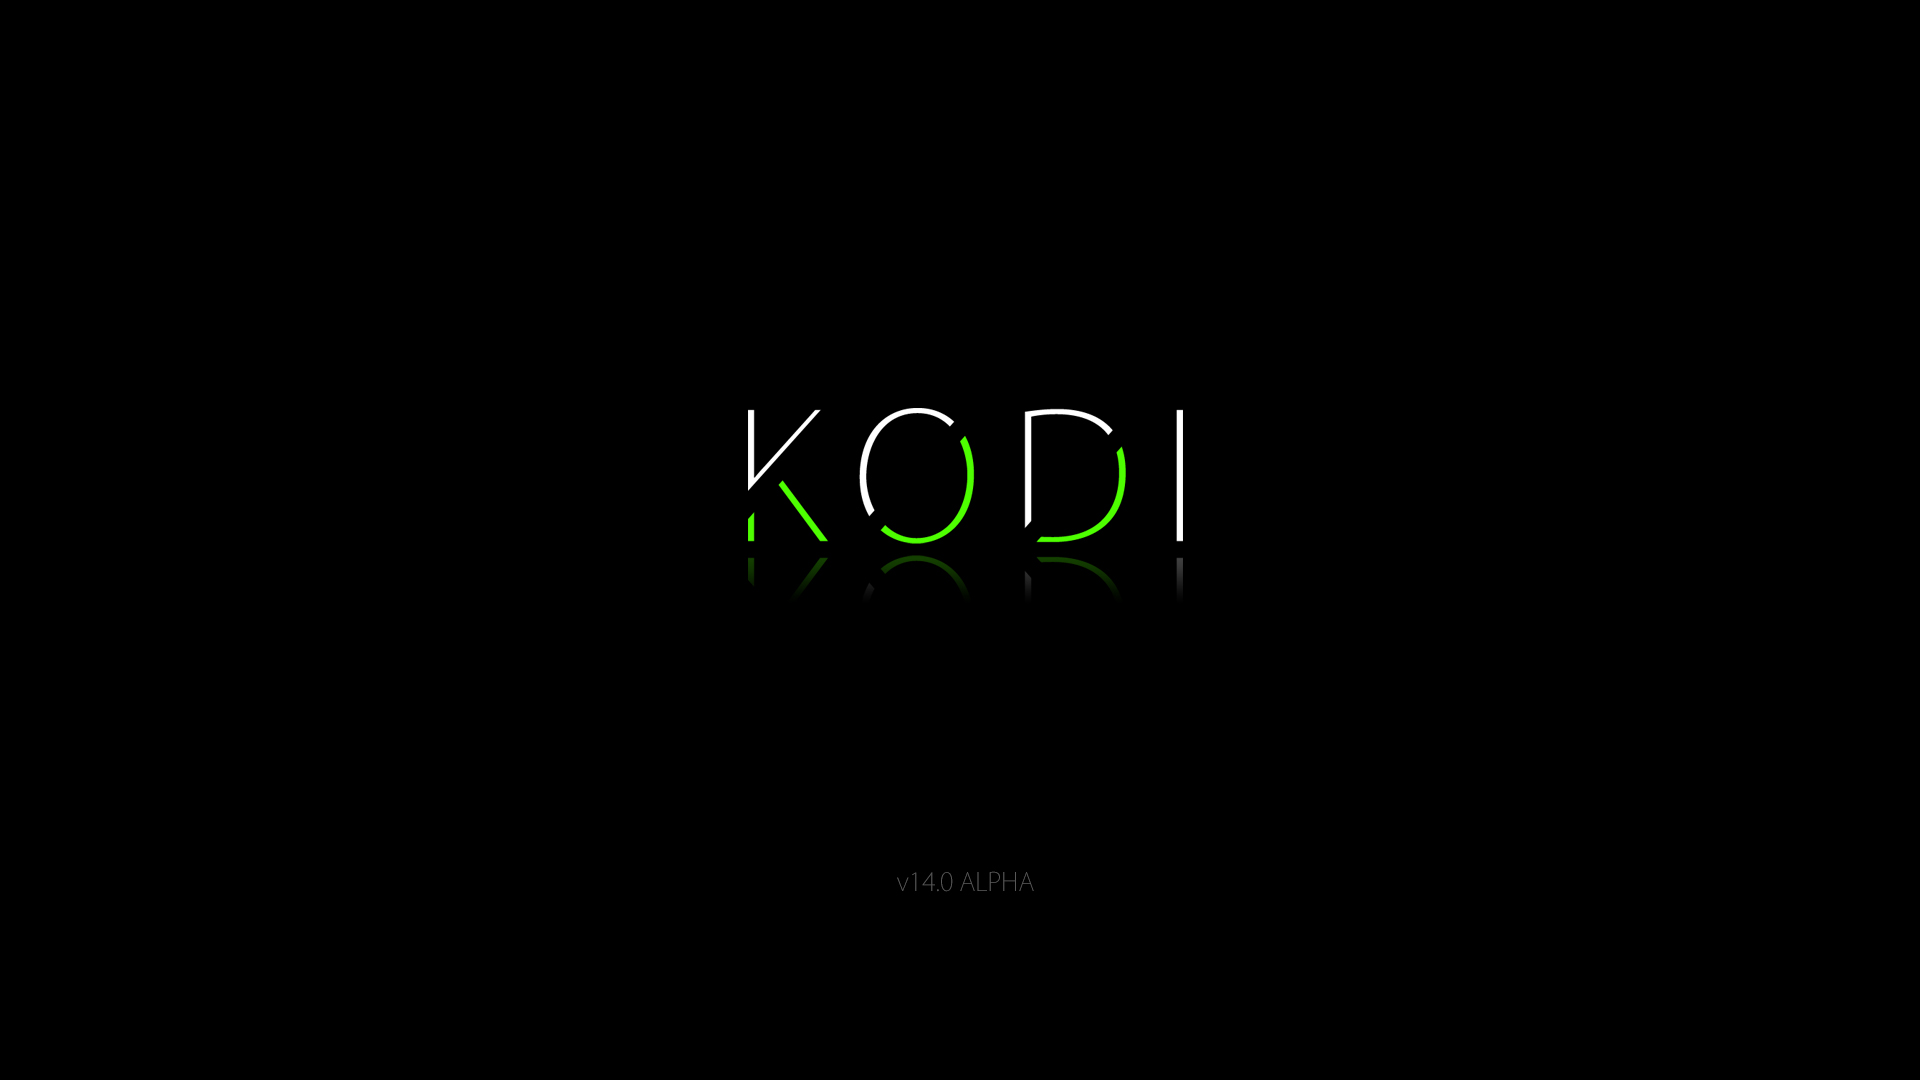 Kodi Logo Suggestions And Ideas